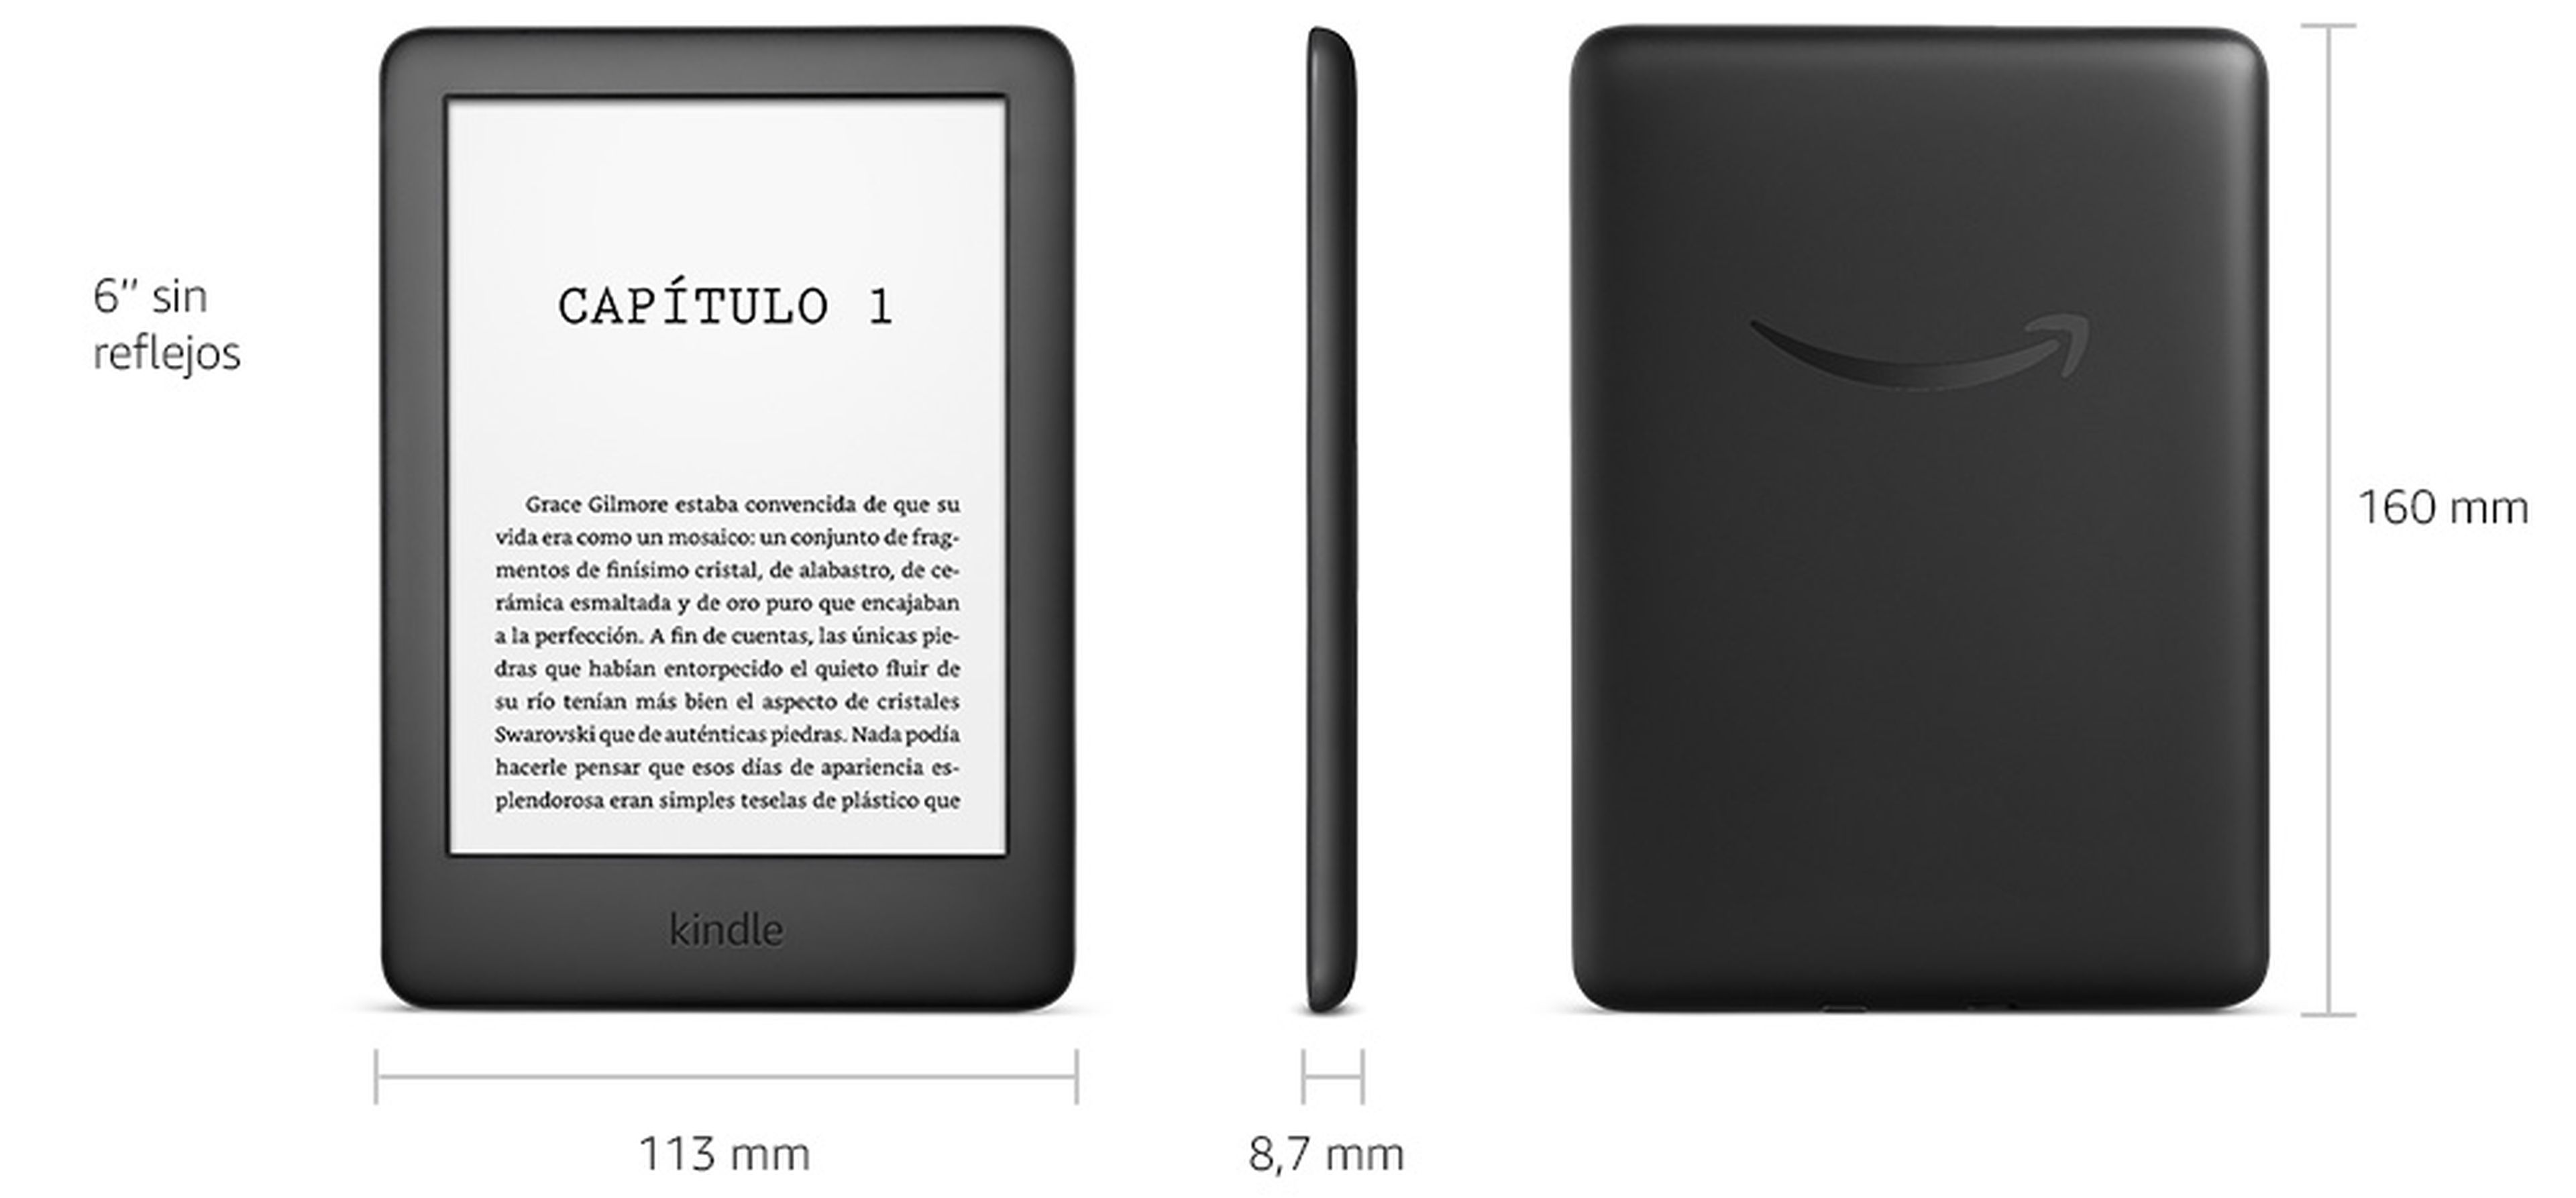 Tamaño y medidas del Kindle de Amazon